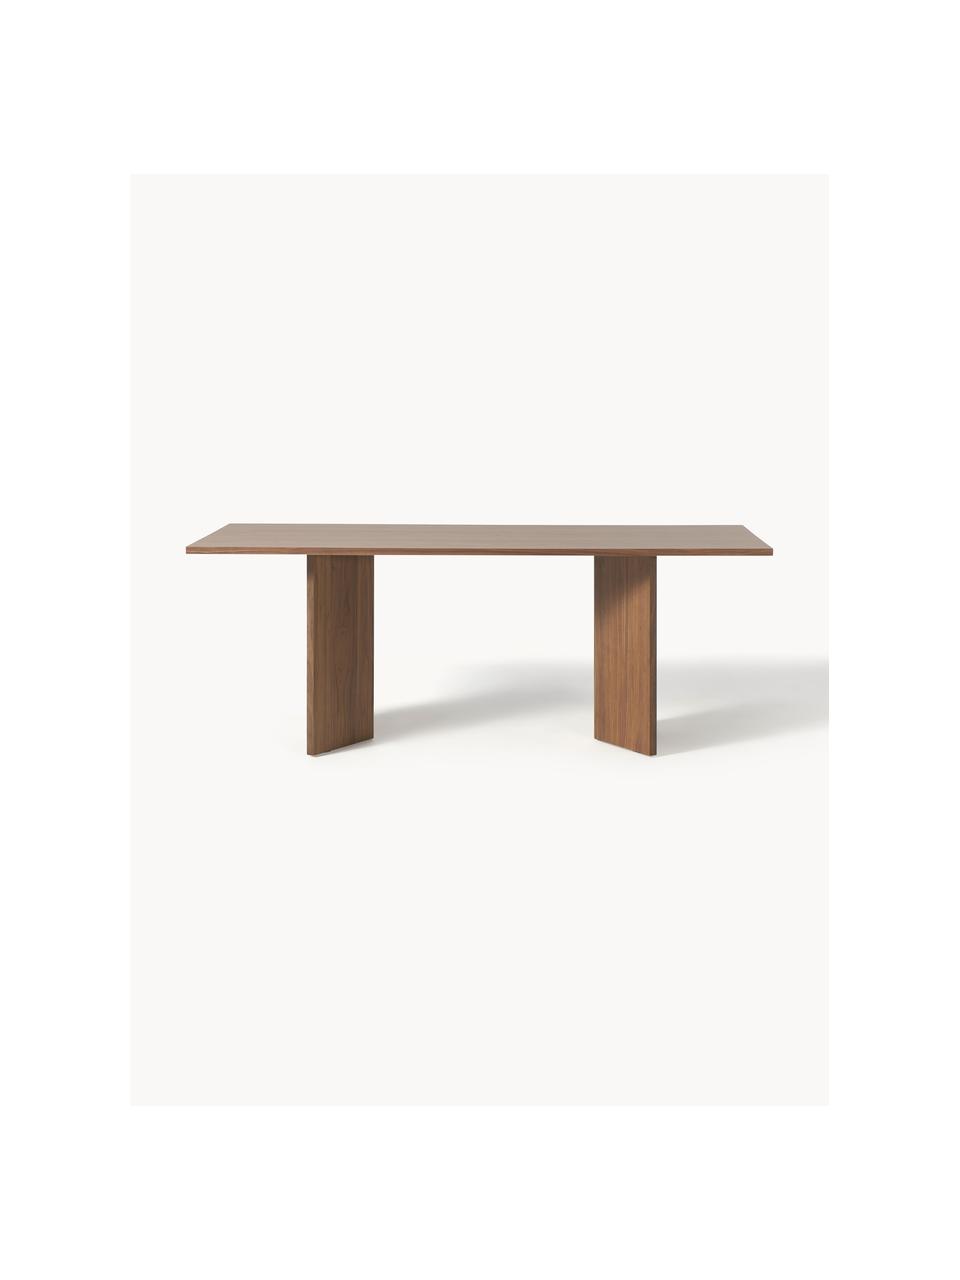 Dřevěný jídelní stůl Toni, 200 x 90 cm, Dřevovláknitá deska střední hustoty (MDF) s ořechovou dýhou, lakovaná

Tento produkt je vyroben z udržitelných zdrojů dřeva s certifikací FSC®., Ořechové dřevo, Š 200 cm, H 90 cm